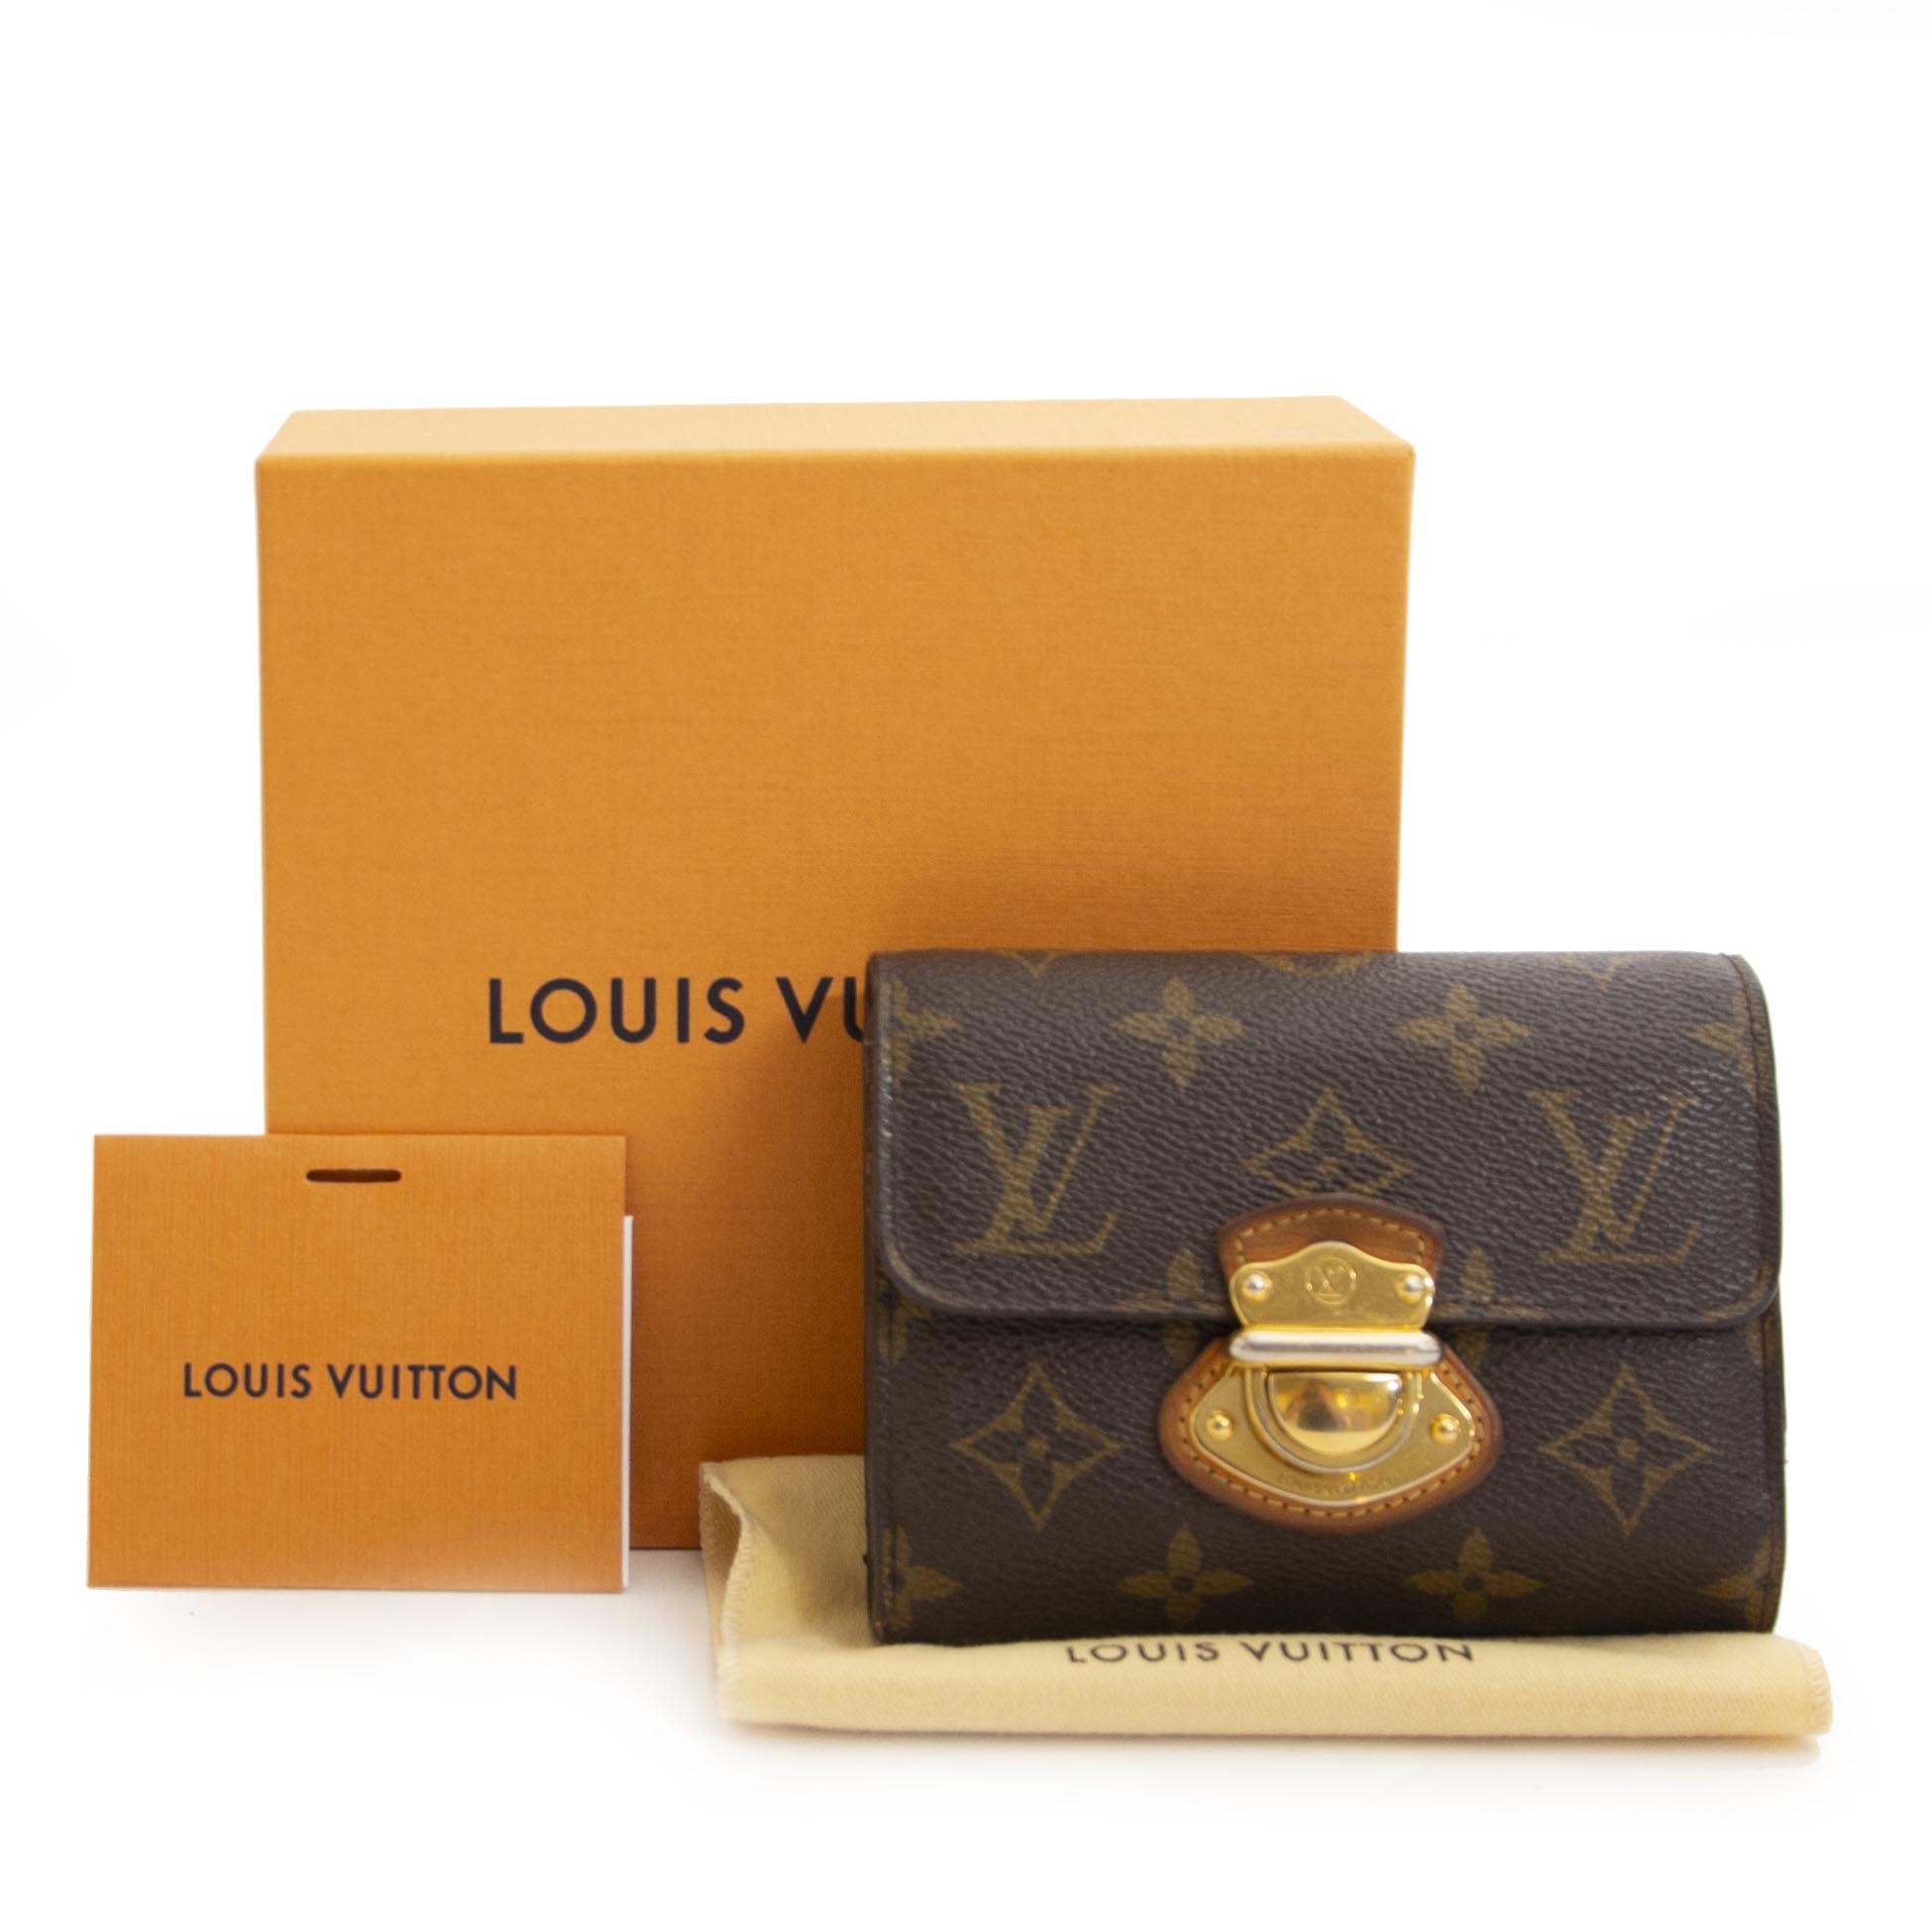 Authentic Louis Vuitton Portefeuille Koala Damier w/Tags, Box, & Receipt  N60005